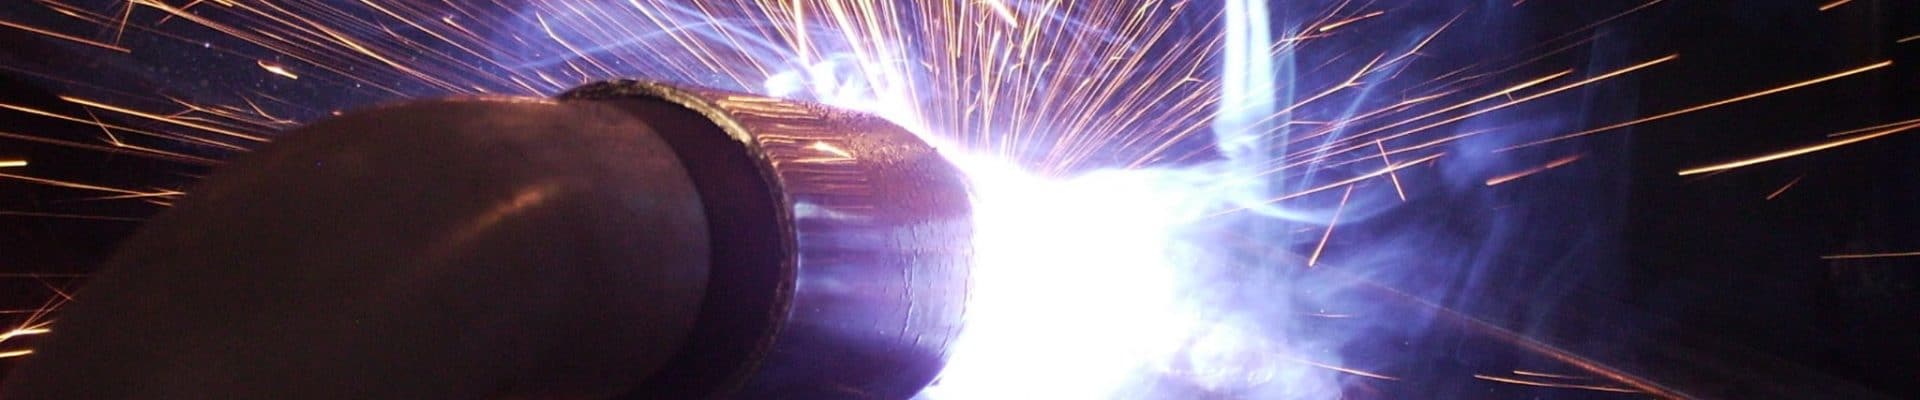 welding-torch-1230055-min